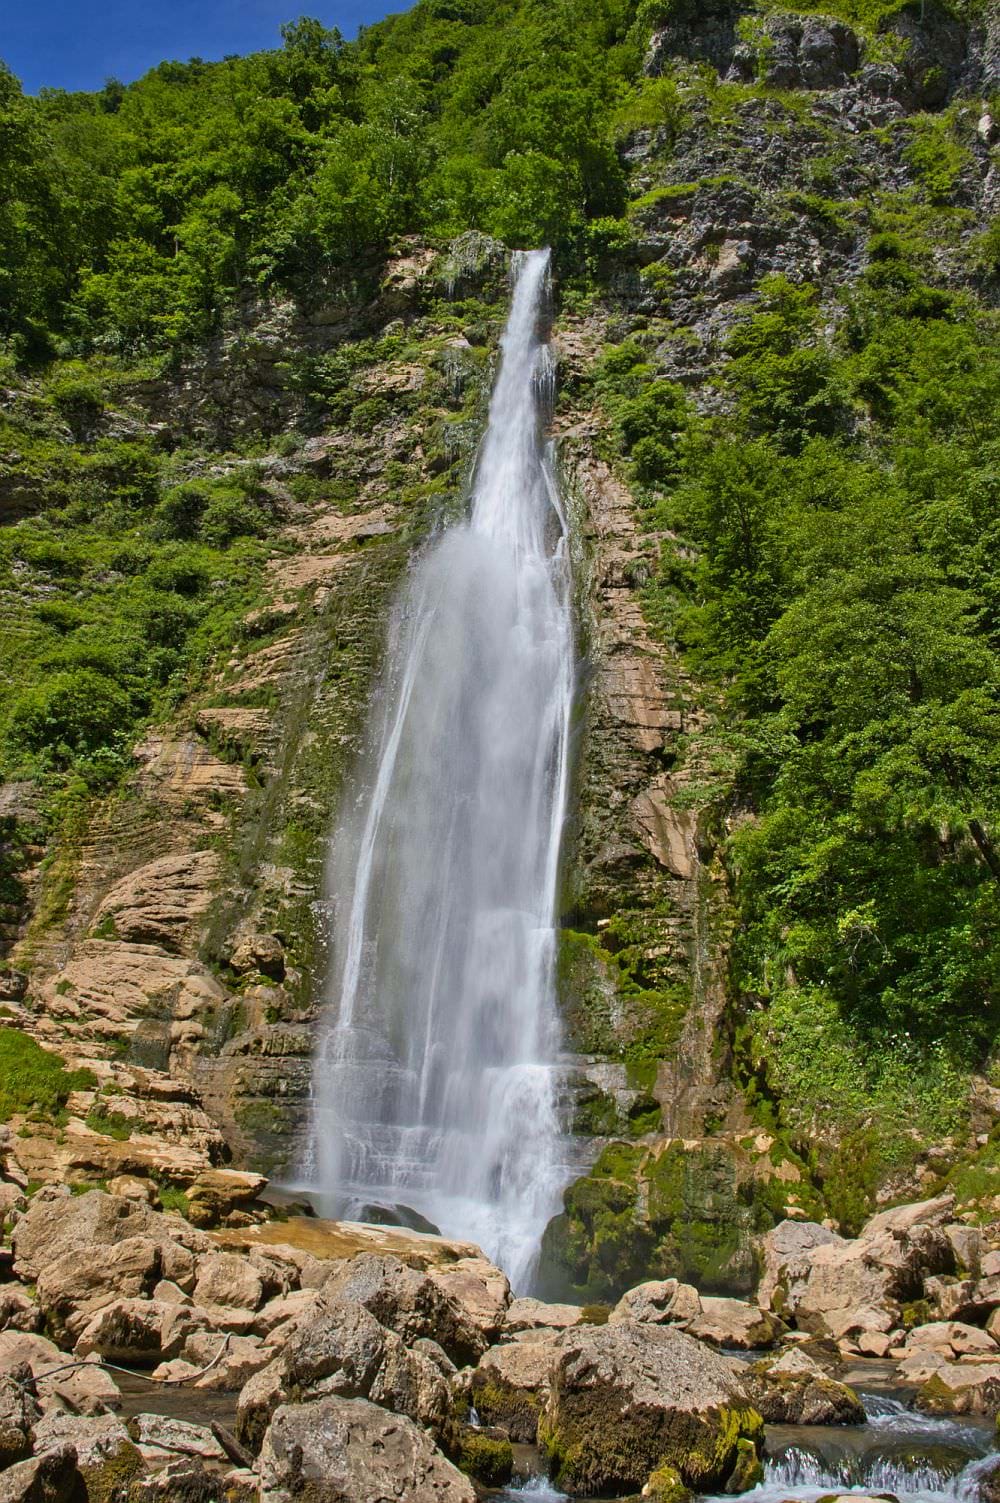 Oniore waterfall